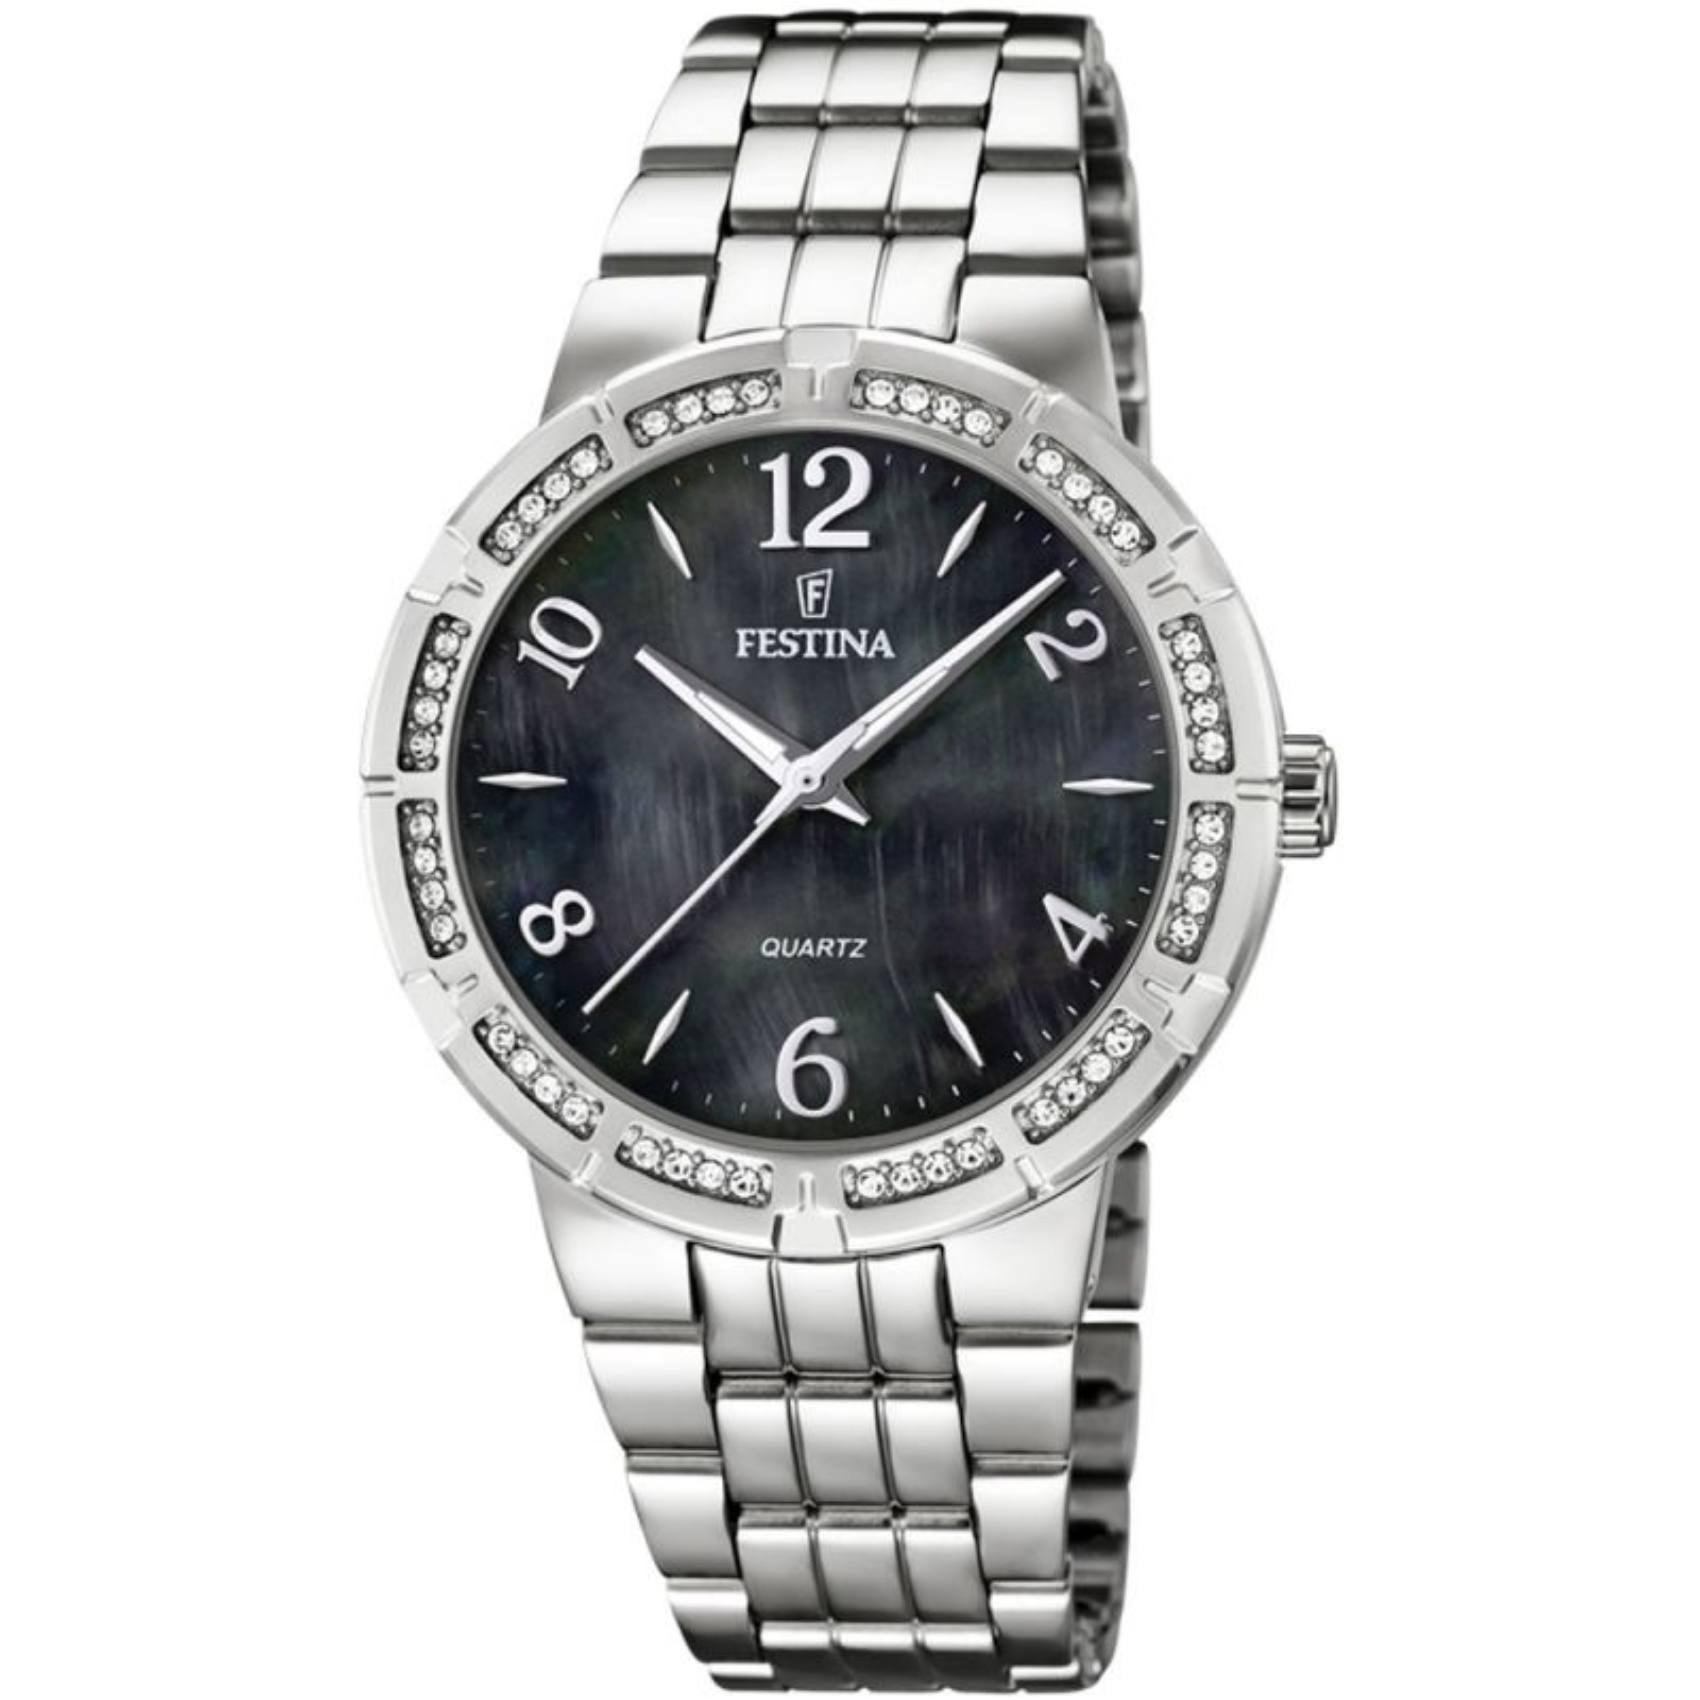 Γυναικείο ρολόι Festina F16703/2 με ασημί ατσάλινο μπρασελέ, μαύρο καντραν, μηχανισμό μπαταρίας, στρογγυλό στεφάνι με διάμετρο 35,5mm και ζιργκόν, αδιάβροχο στις 5ΑΤΜ-50Μ.